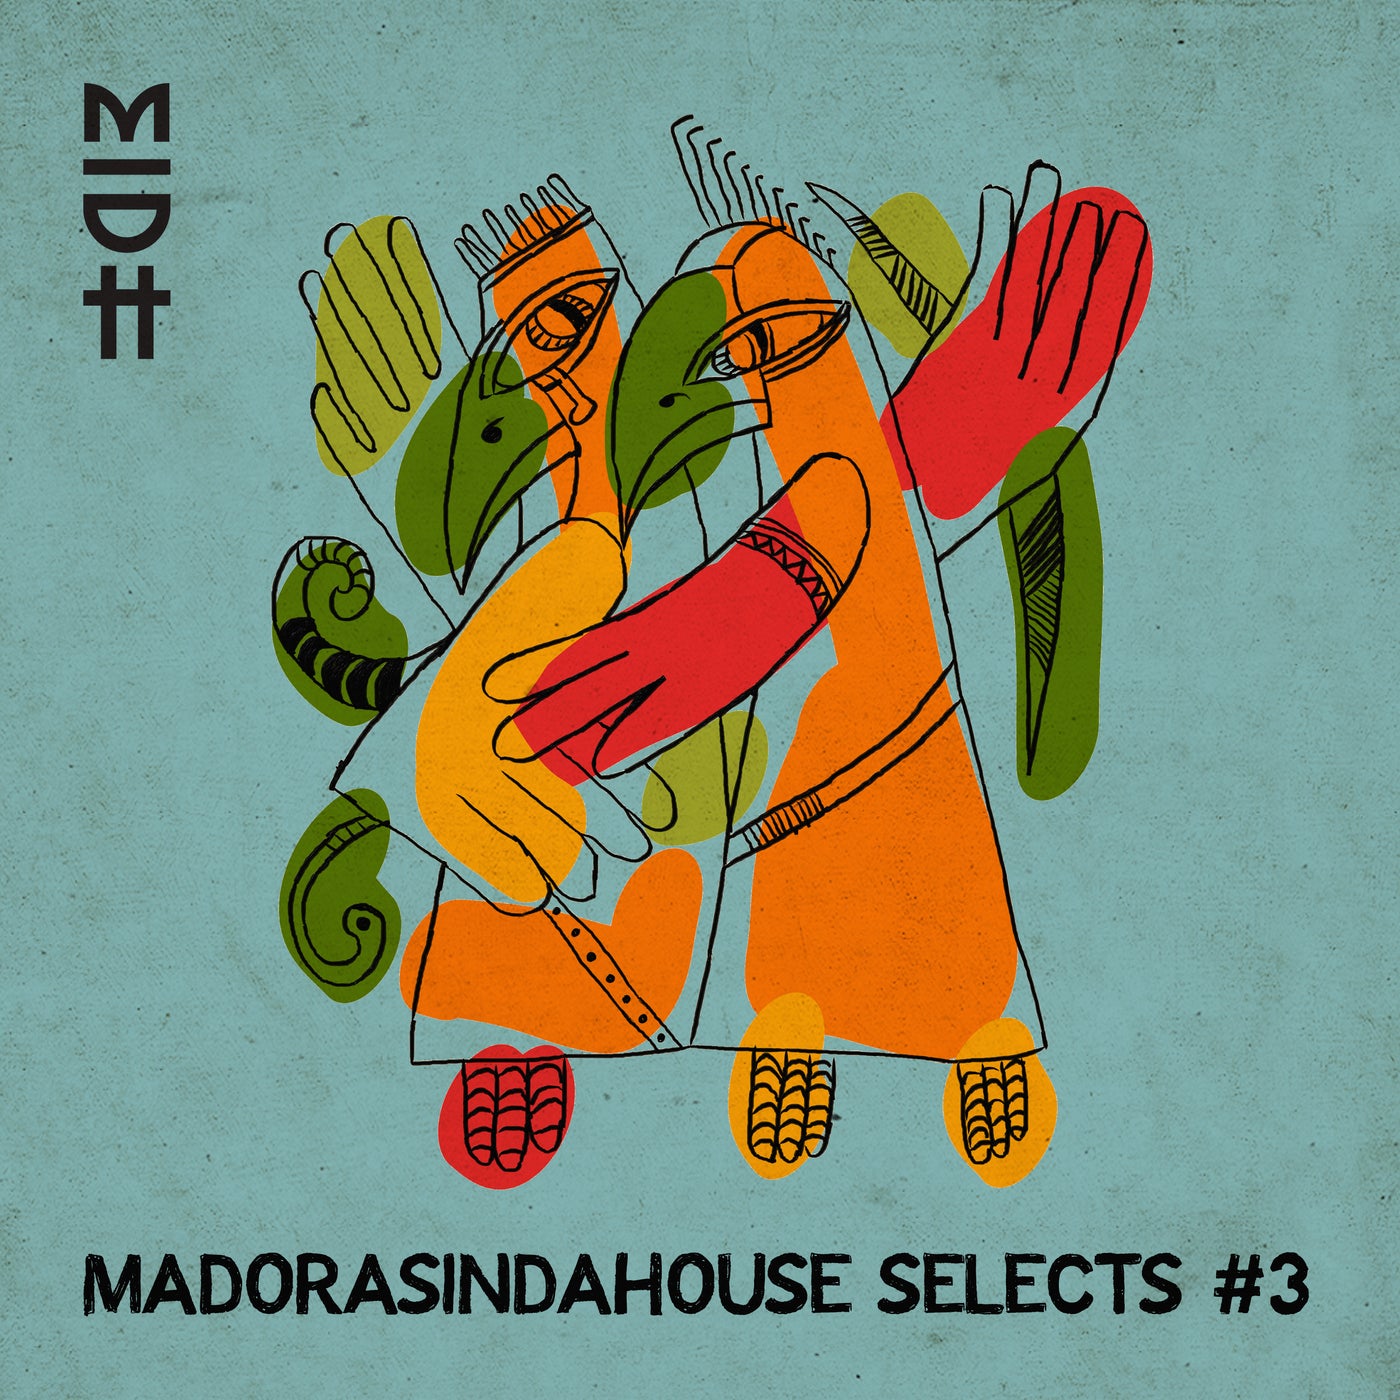 Madorasindahouse Selects #3